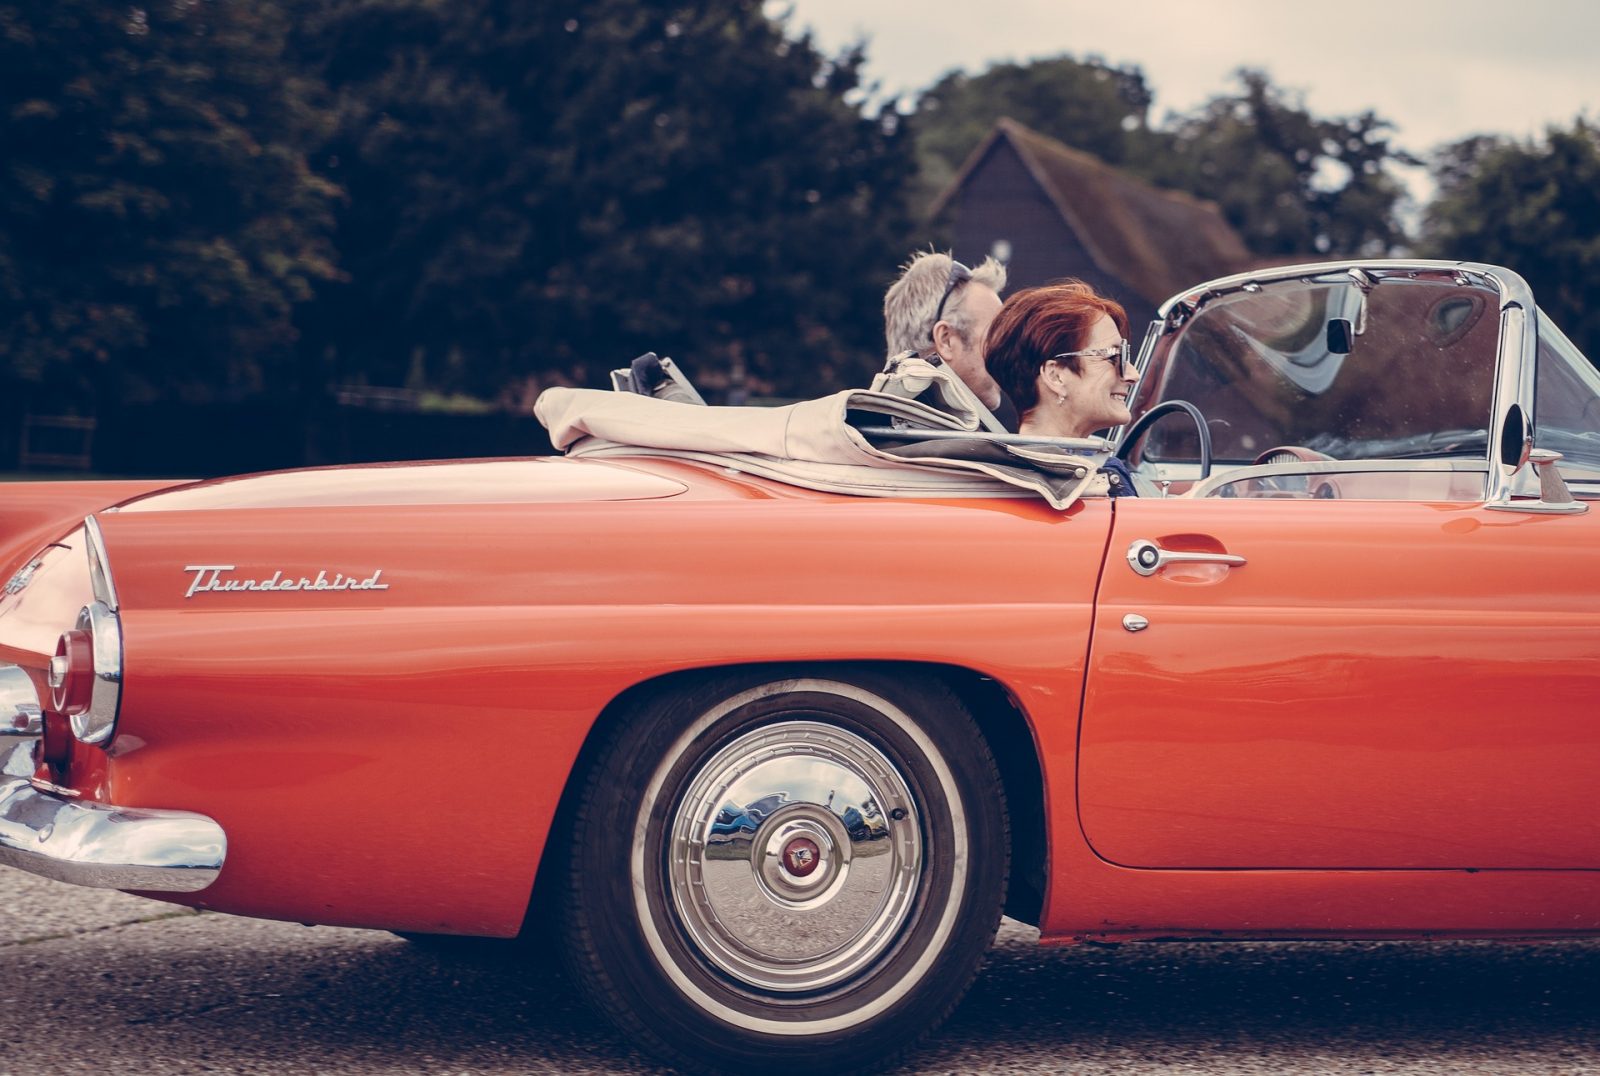 Een ouder echtpaar geniet van een ritje in een klassieke oranje Thunderbird-cabriolet met het dak naar beneden, rijdend door een schilderachtig landelijk gebied. De man rijdt terwijl de vrouw lacht, met bomen en een huis op de achtergrond zichtbaar – een beeld van wat kan bloeien uit verbindingen die tot stand zijn gekomen via een duurzame relatie.